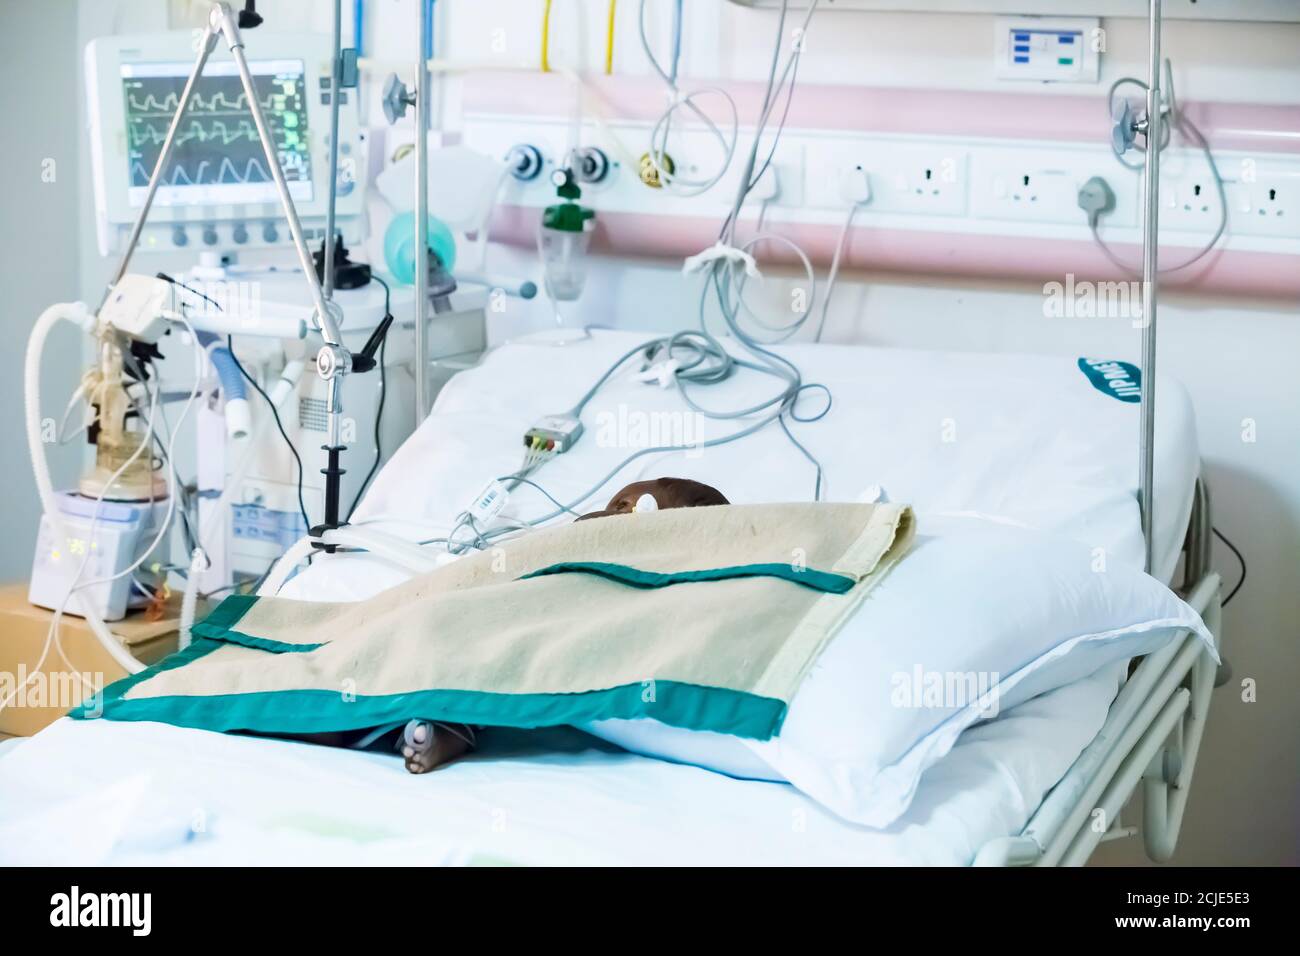 PUDUCHERRY, INDIEN - MÄRZ CIRCA, 2020. Baby auf einem großen Bett auf einer künstlichen Lungenventilation Ausrüstung im indischen Krankenhaus platziert. Lungenentzündung diagnostizieren. C Stockfoto